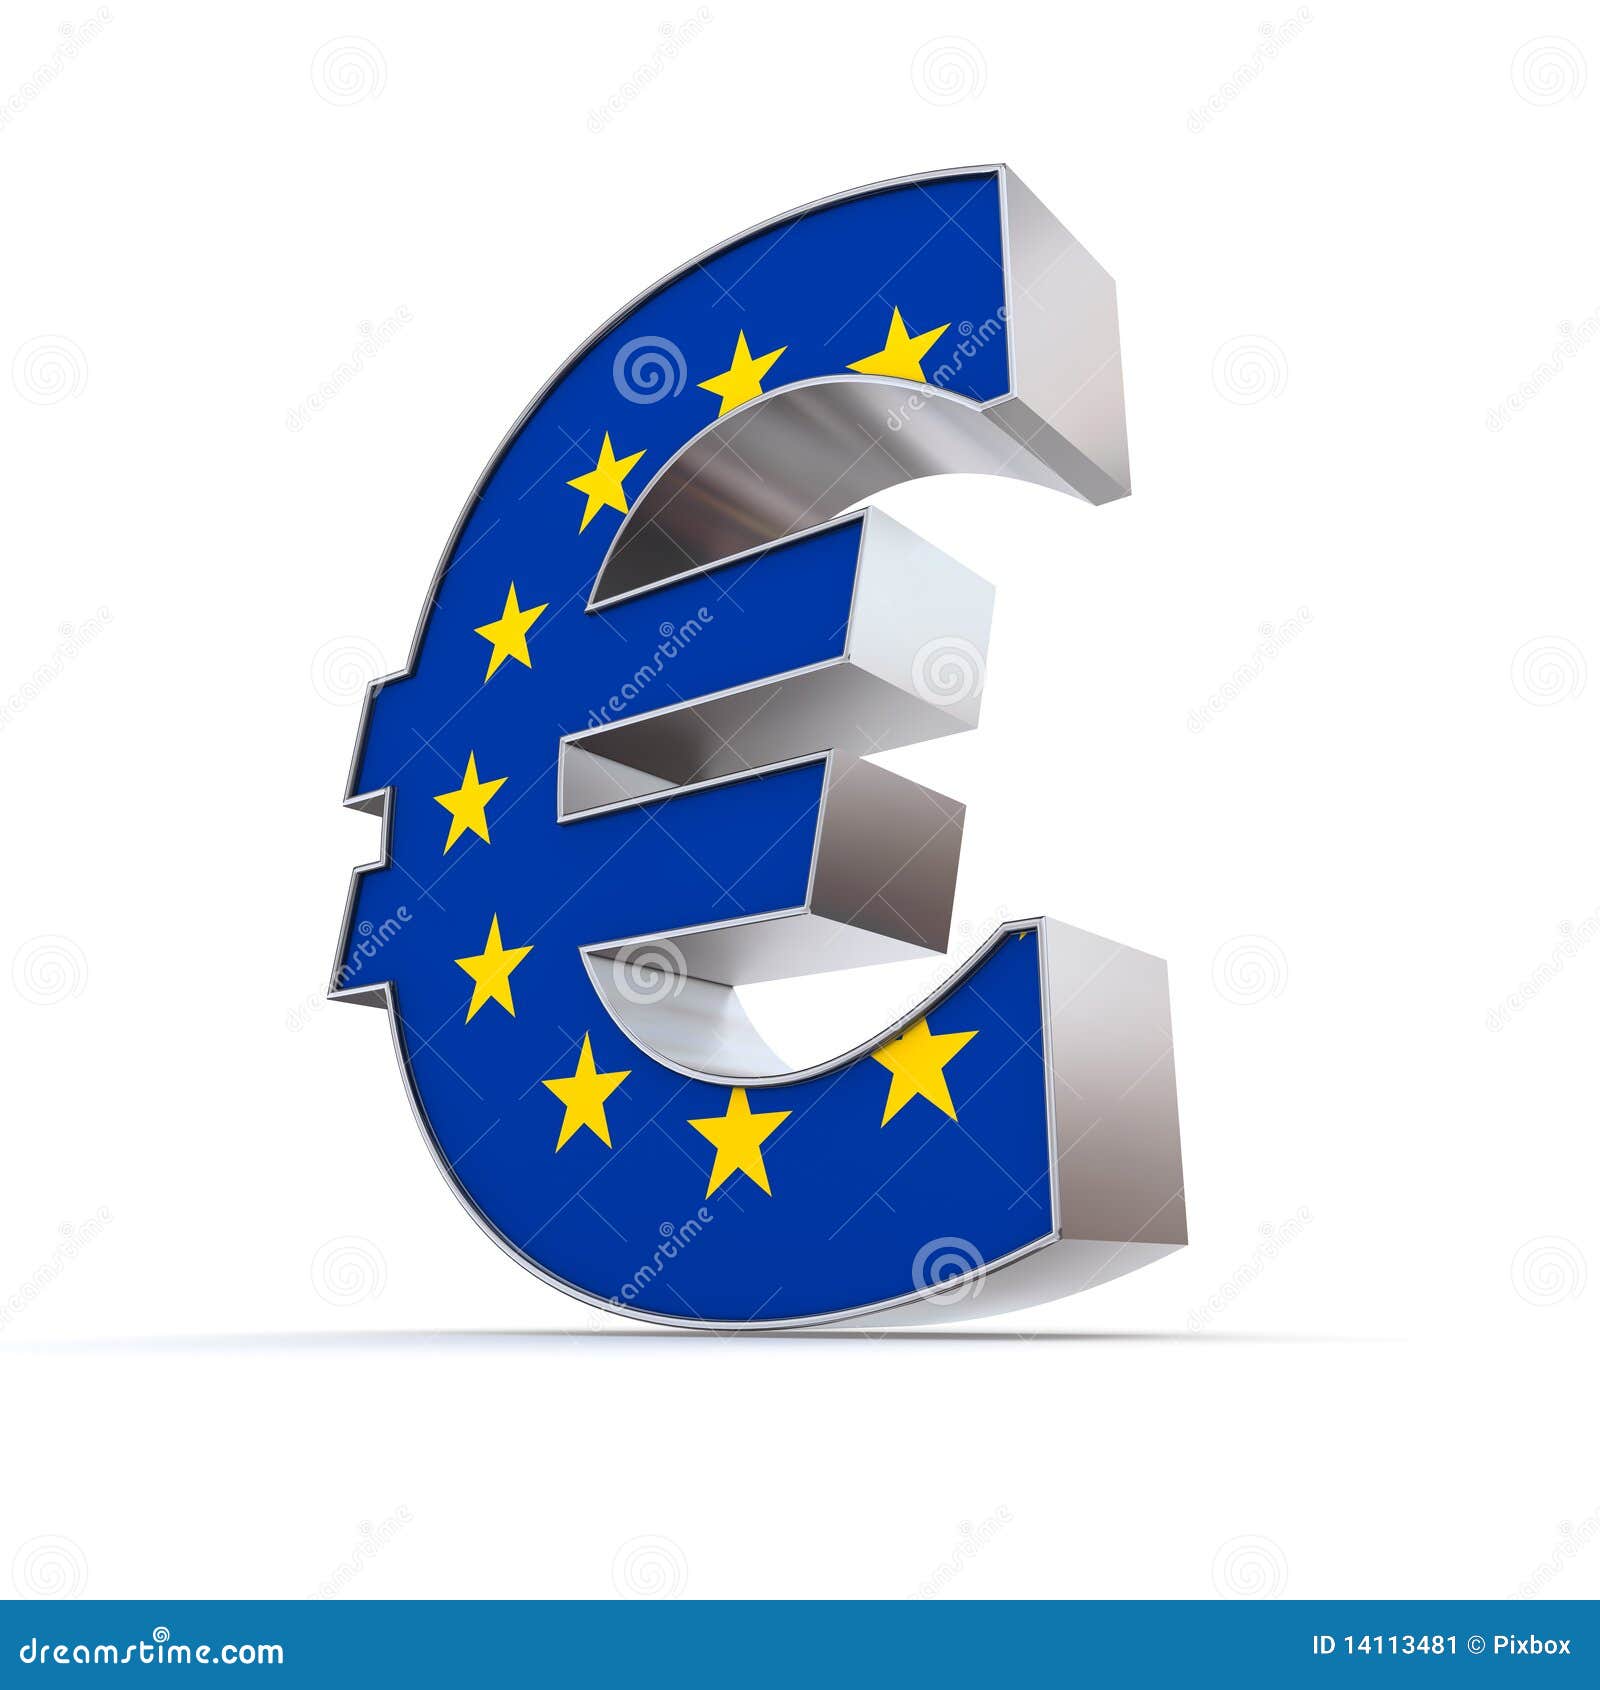 European union logo. Vector illustration. EU flag icon with round stars ...